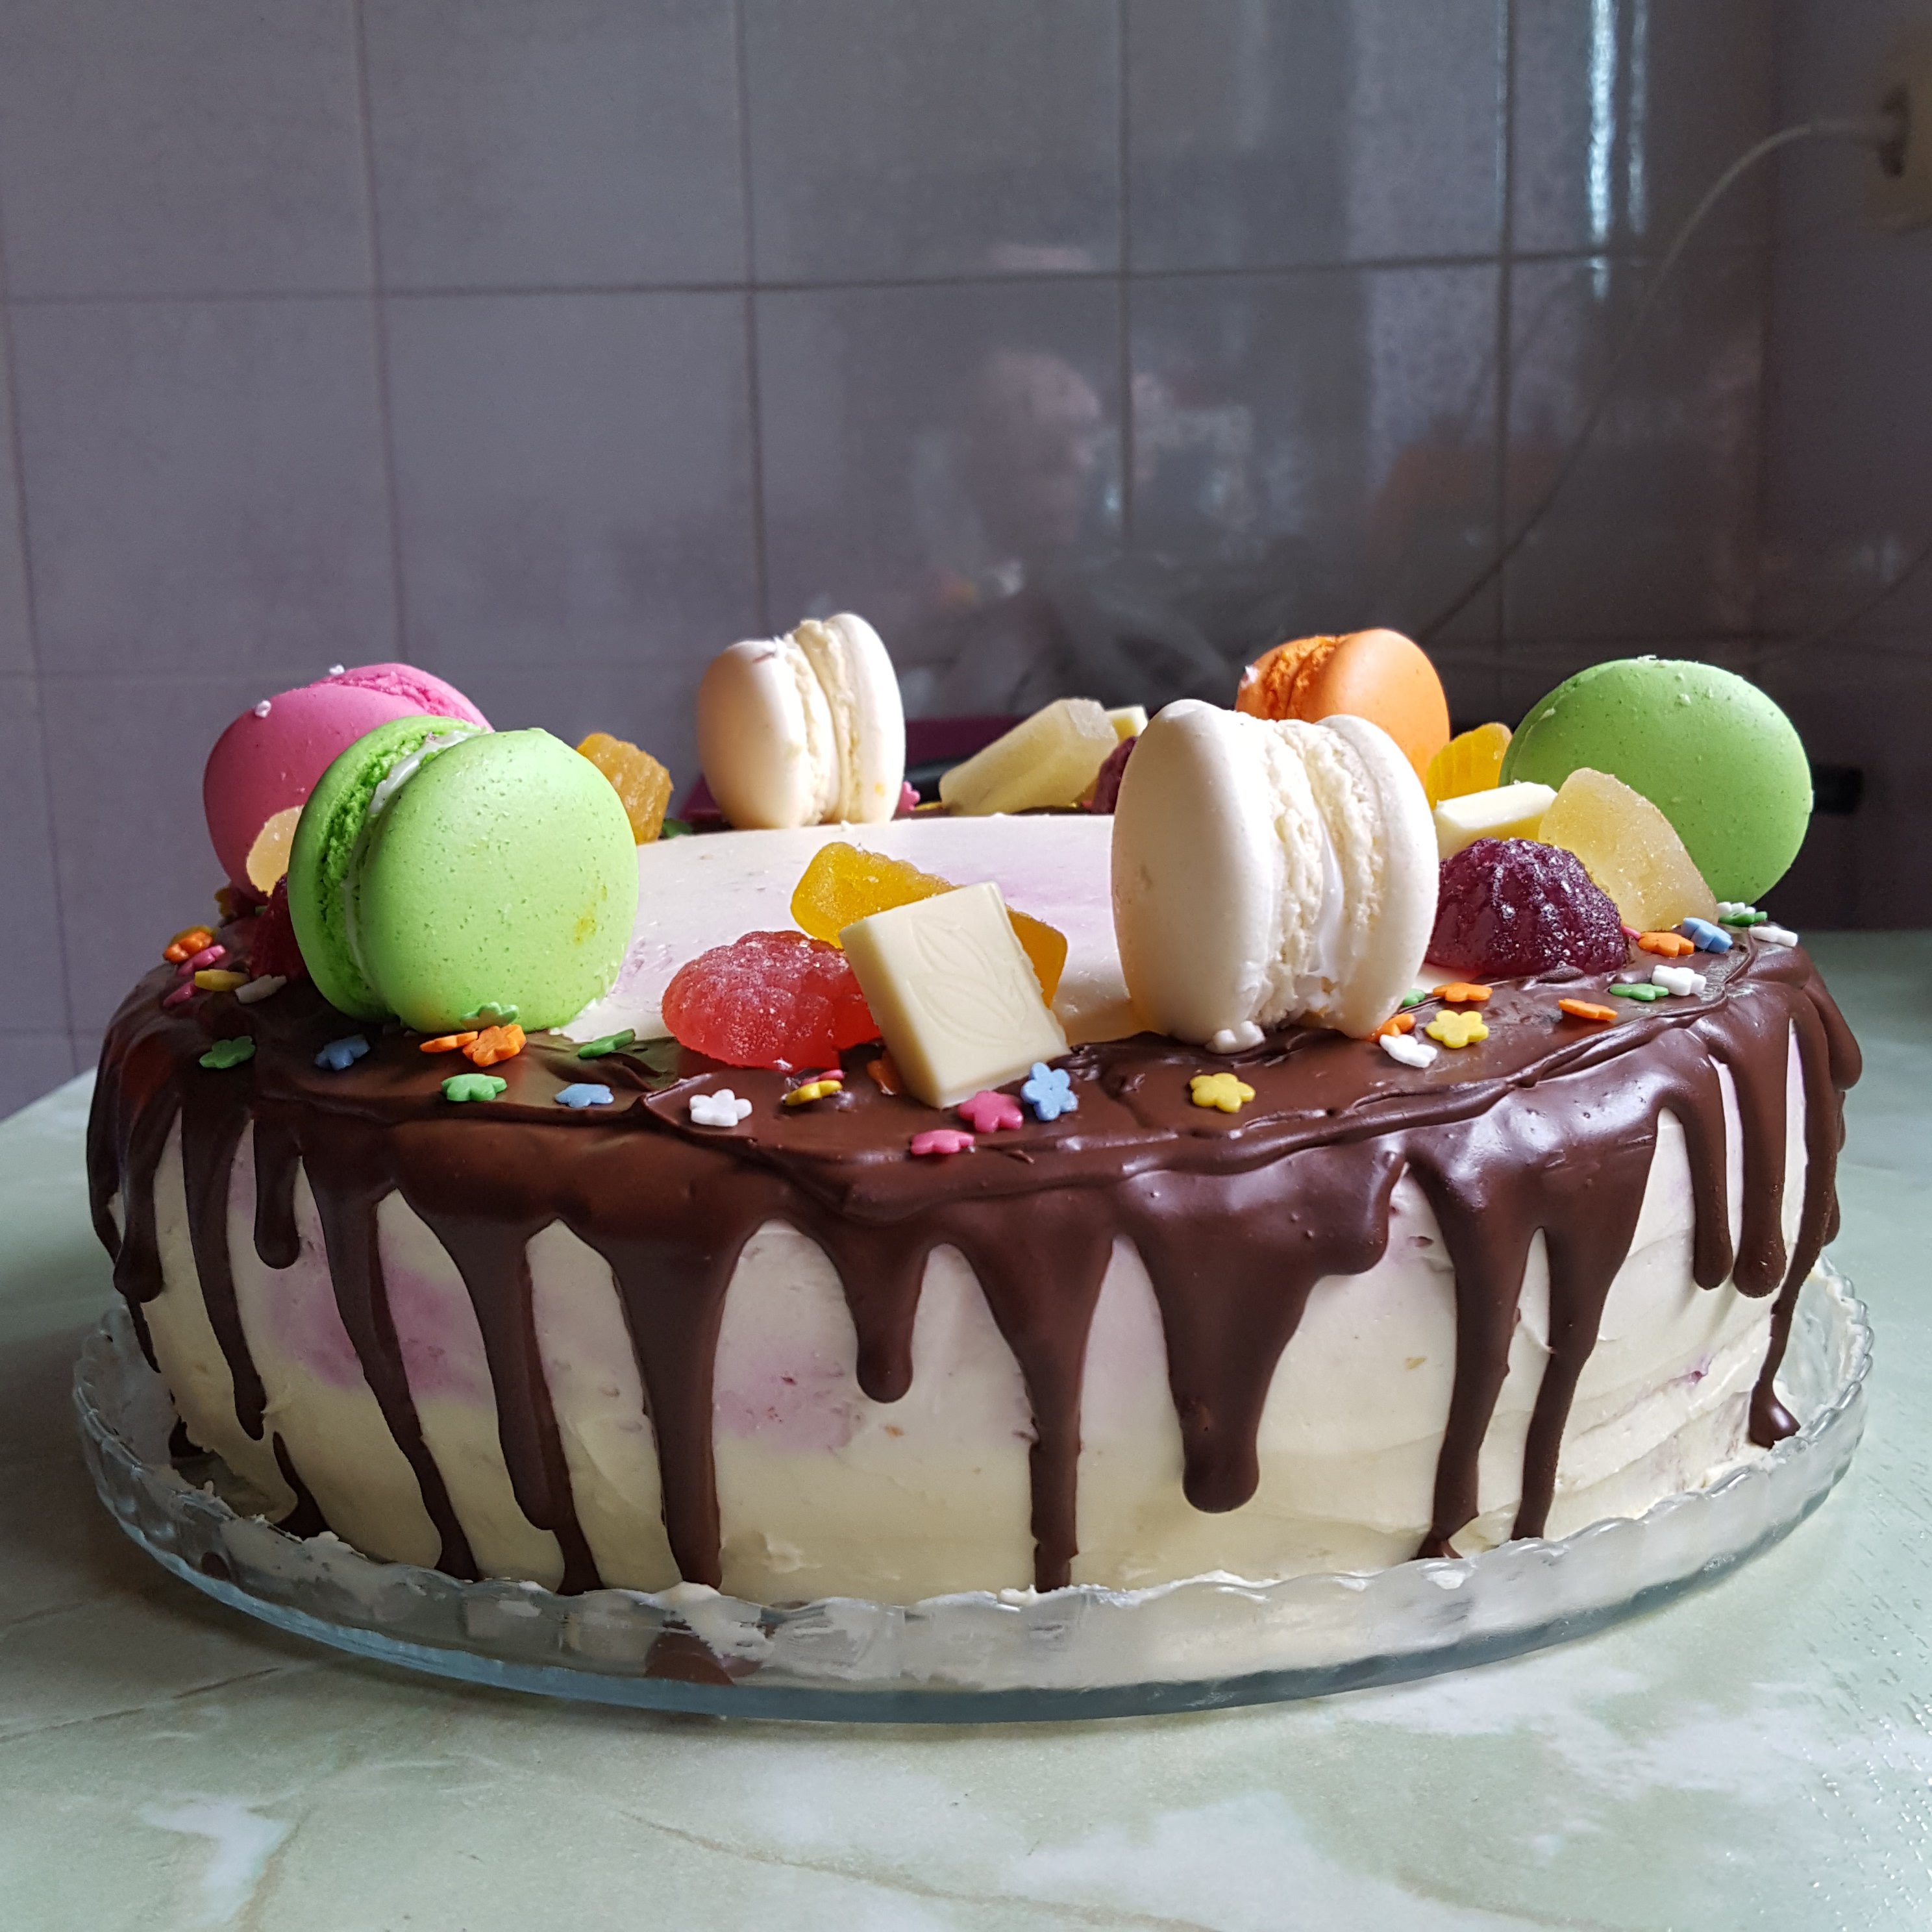 Как сделать торт красивый своими руками: Рецепты тортов домашнего приготовления - 340 пошаговых фоторецептов